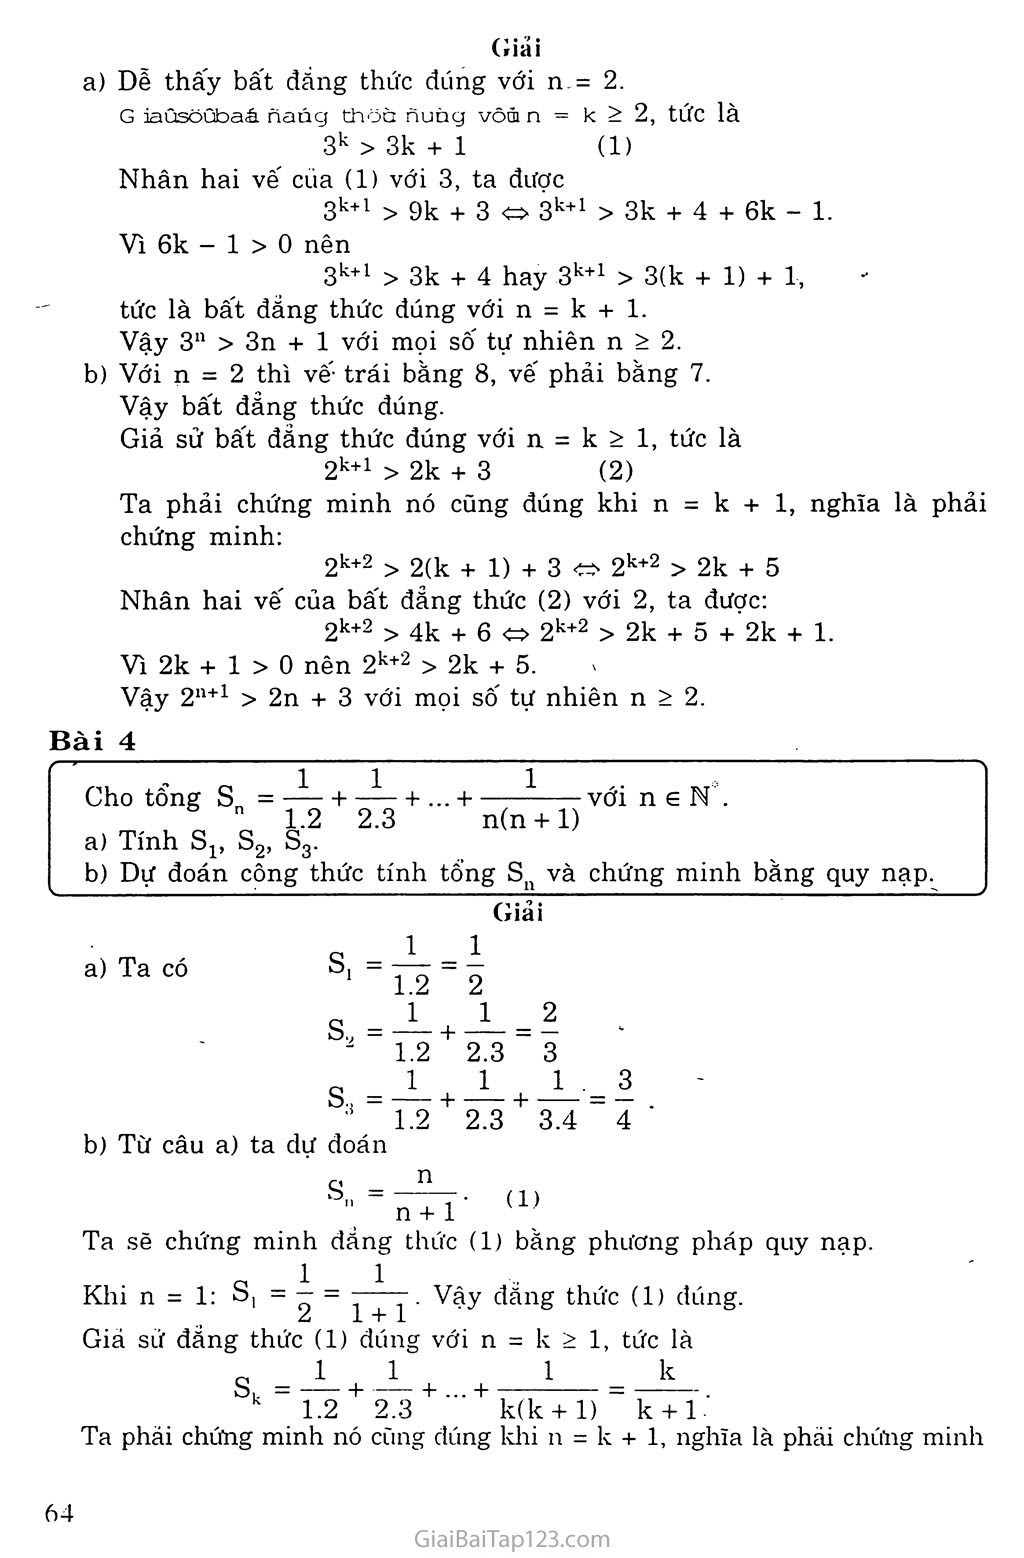 Vấn đề 1. Phương pháp qui nạp toán học trang 4